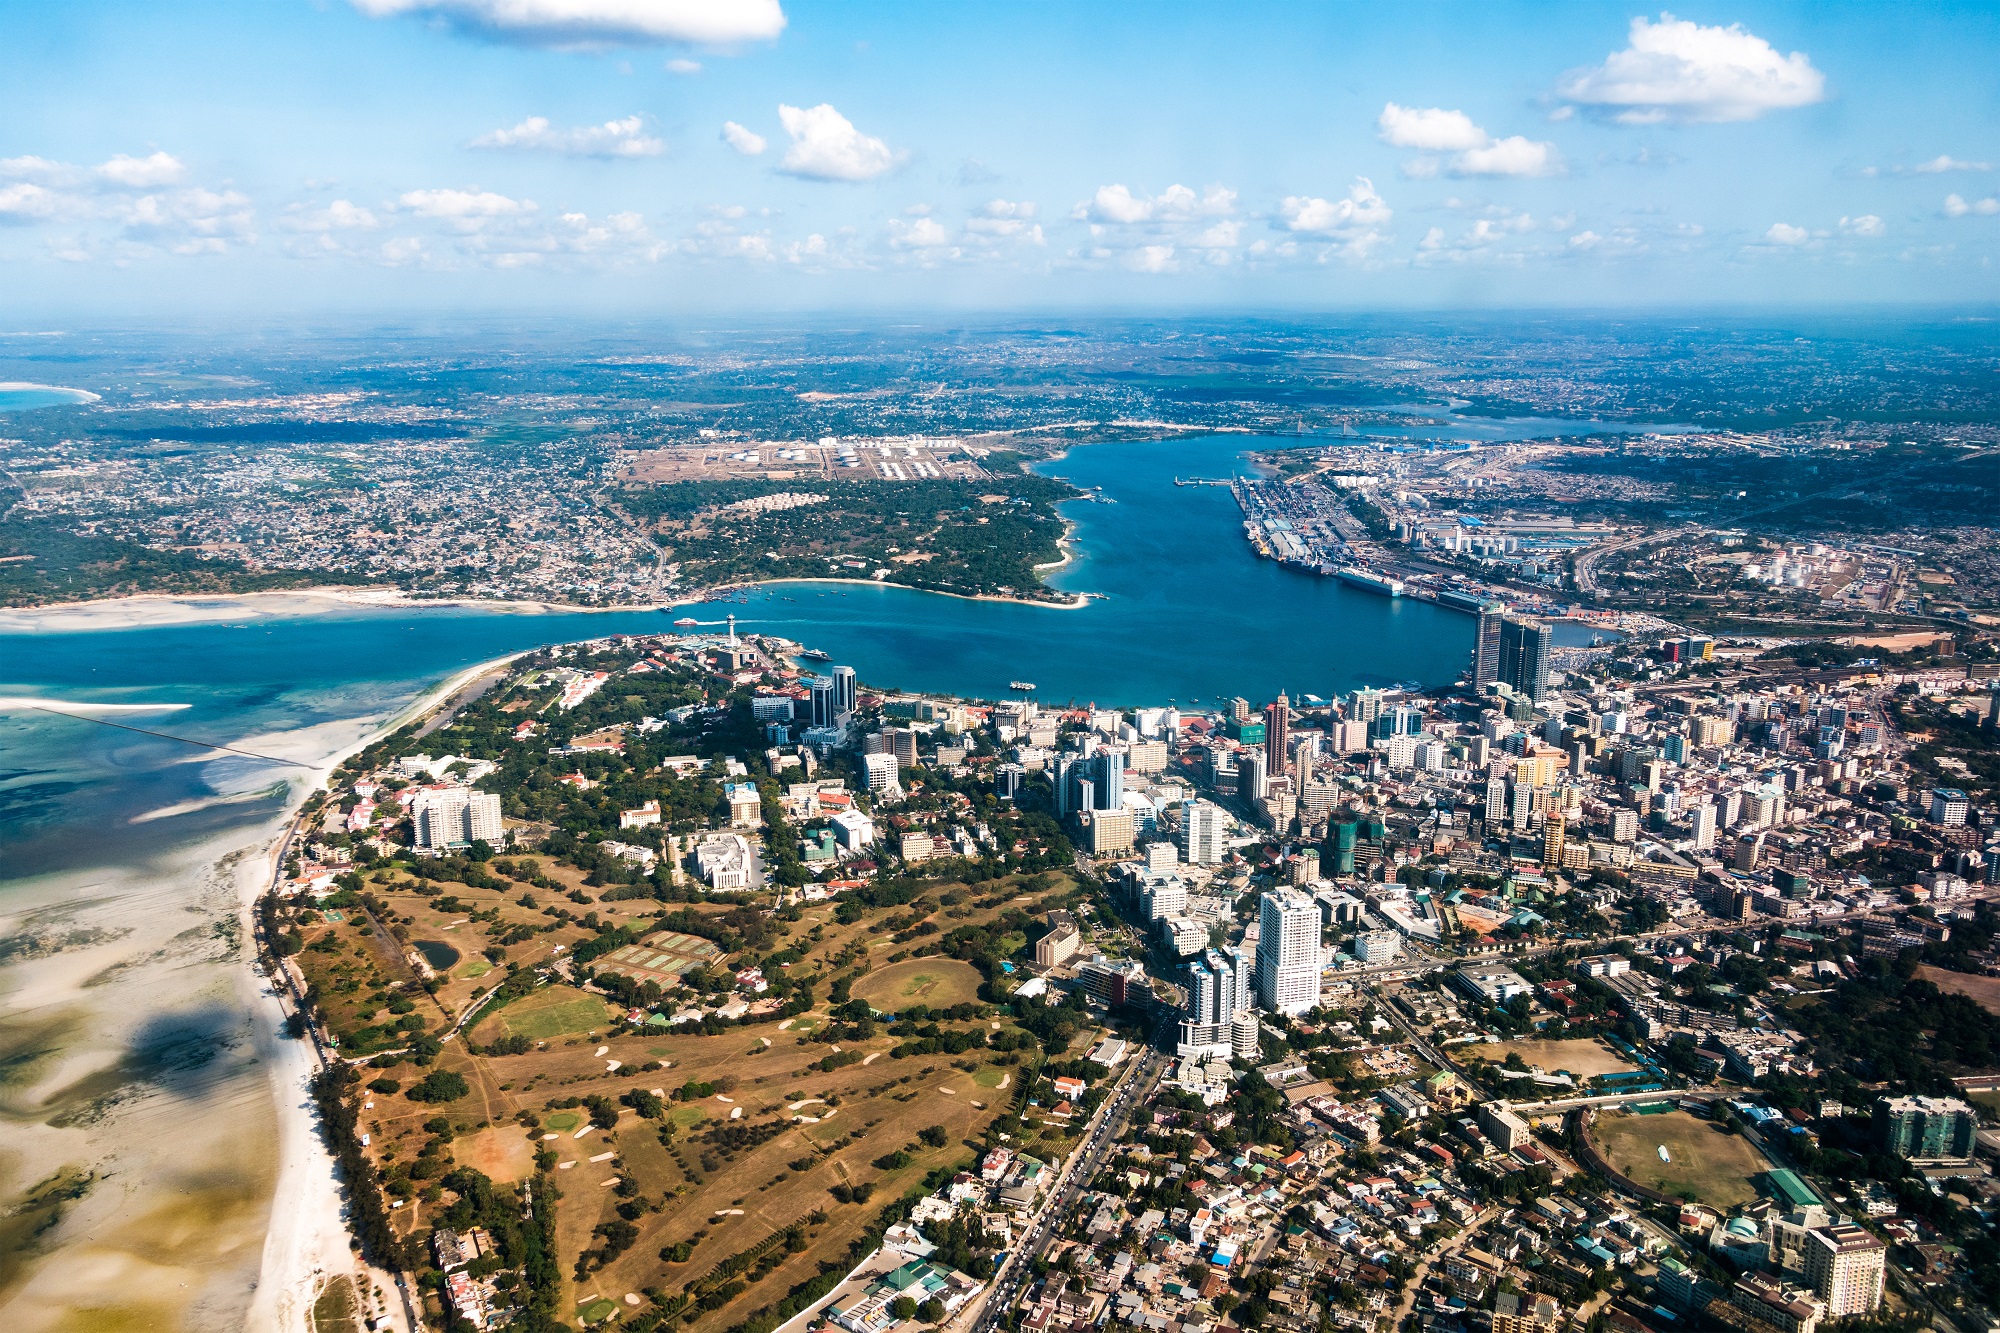 Aerial view of river bend in Dar es Salaam city